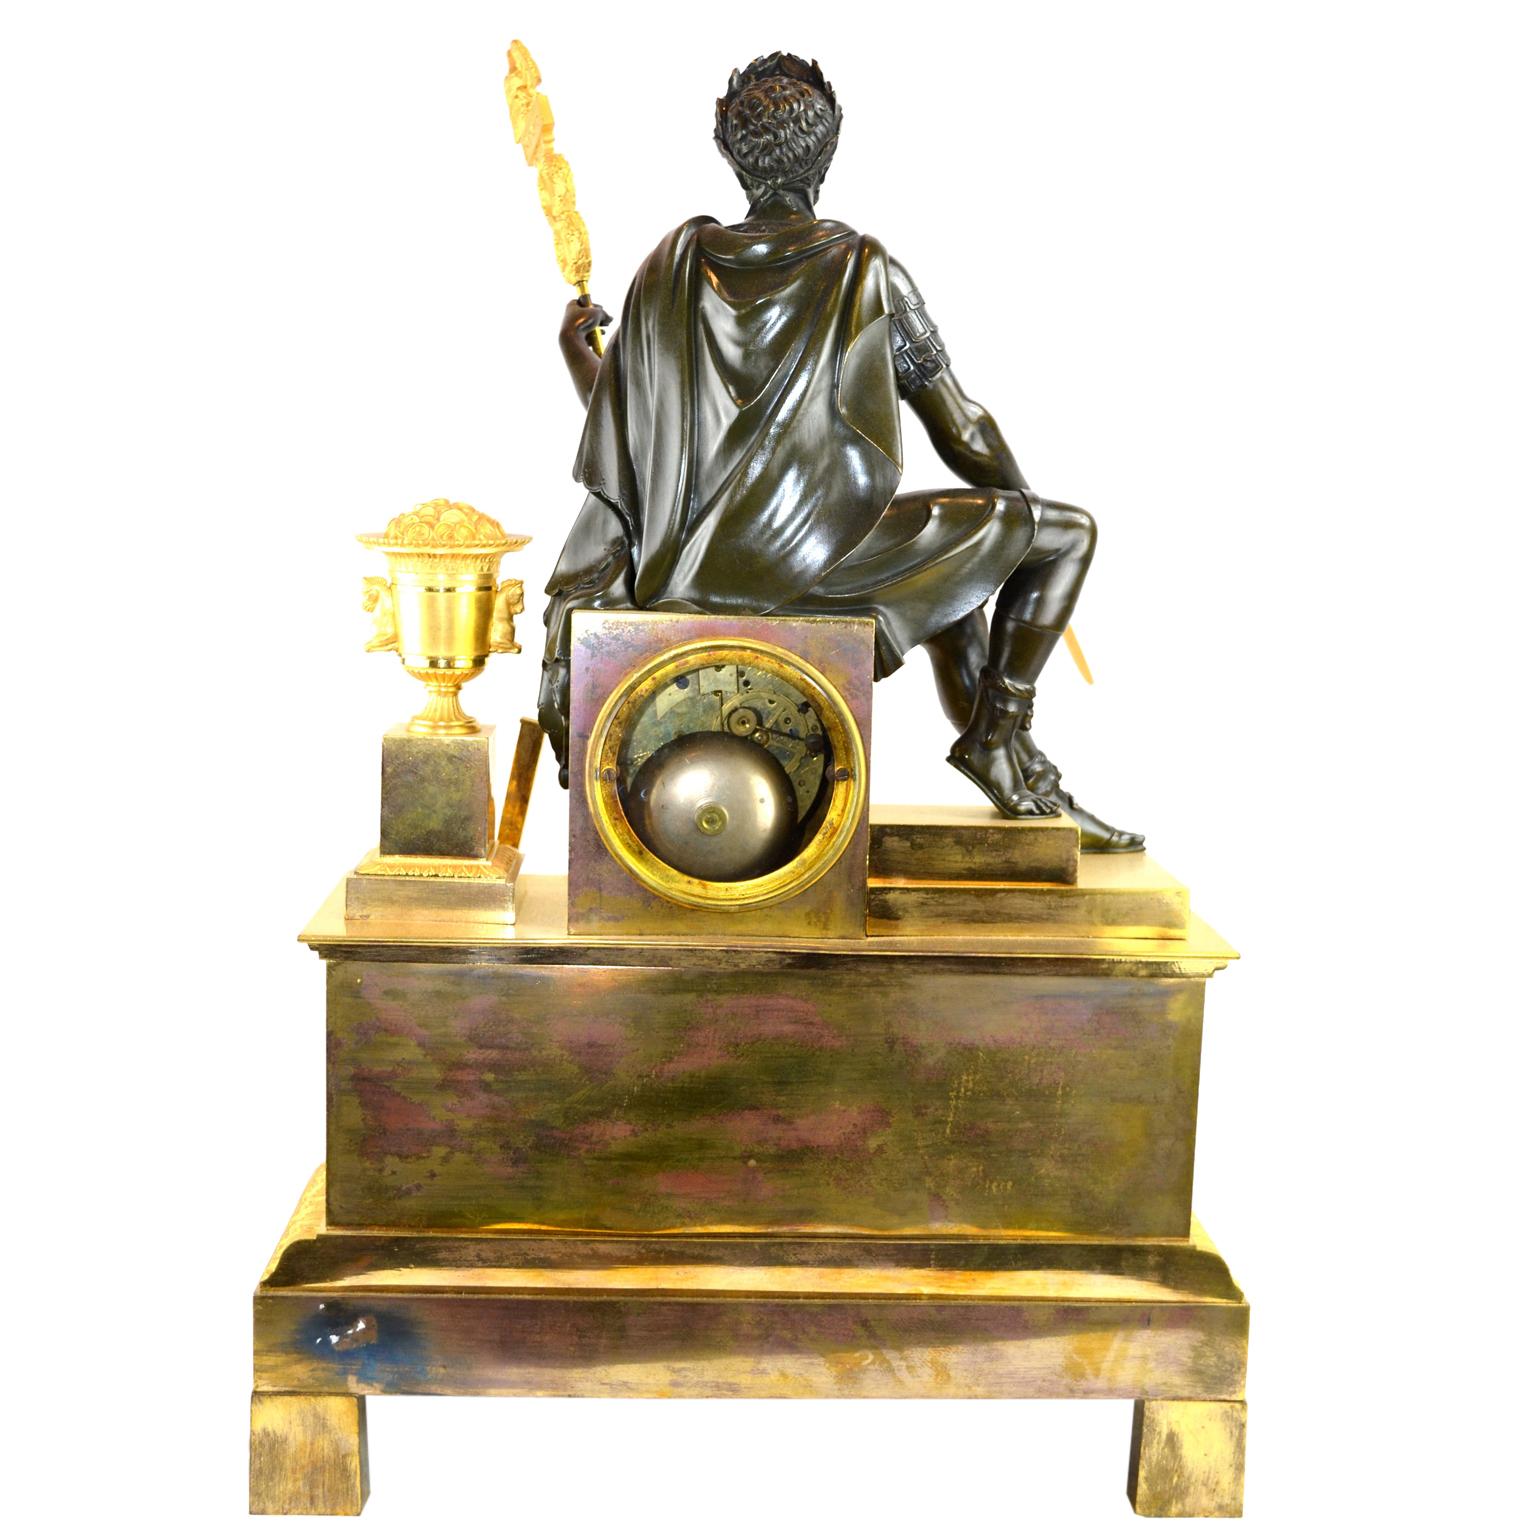 Pendule de cheminée de la fin de la période de l'Empire français représentant un empereur romain assis, en bronze patiné finement ciselé, tenant une épée dans une main et une bannière romaine dans l'autre. Il repose sur un socle rectangulaire qui